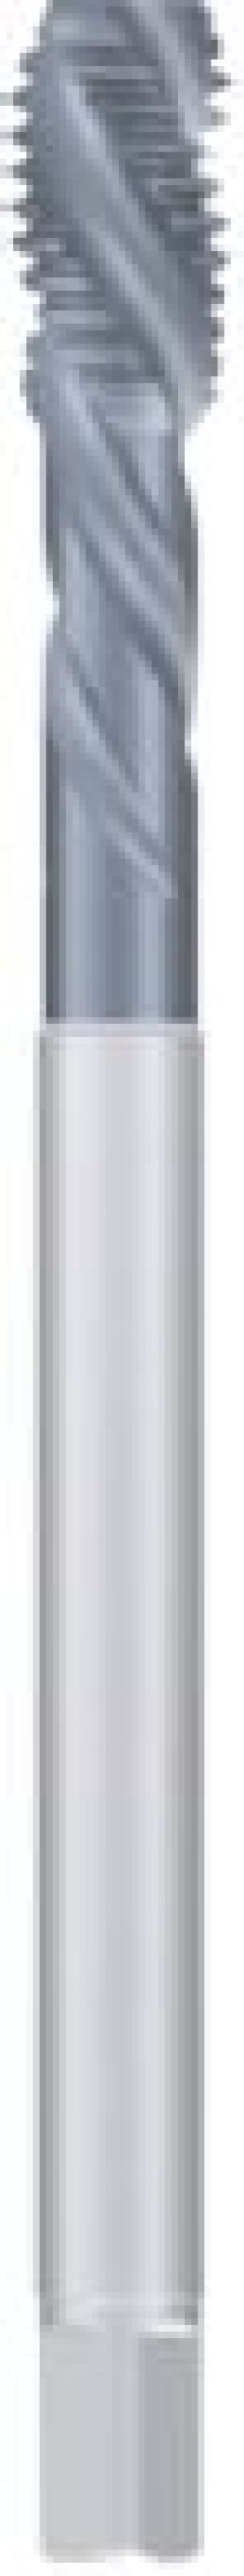 Fanar Gwintownik maszynowy M20 (D4-565001-0200) 1